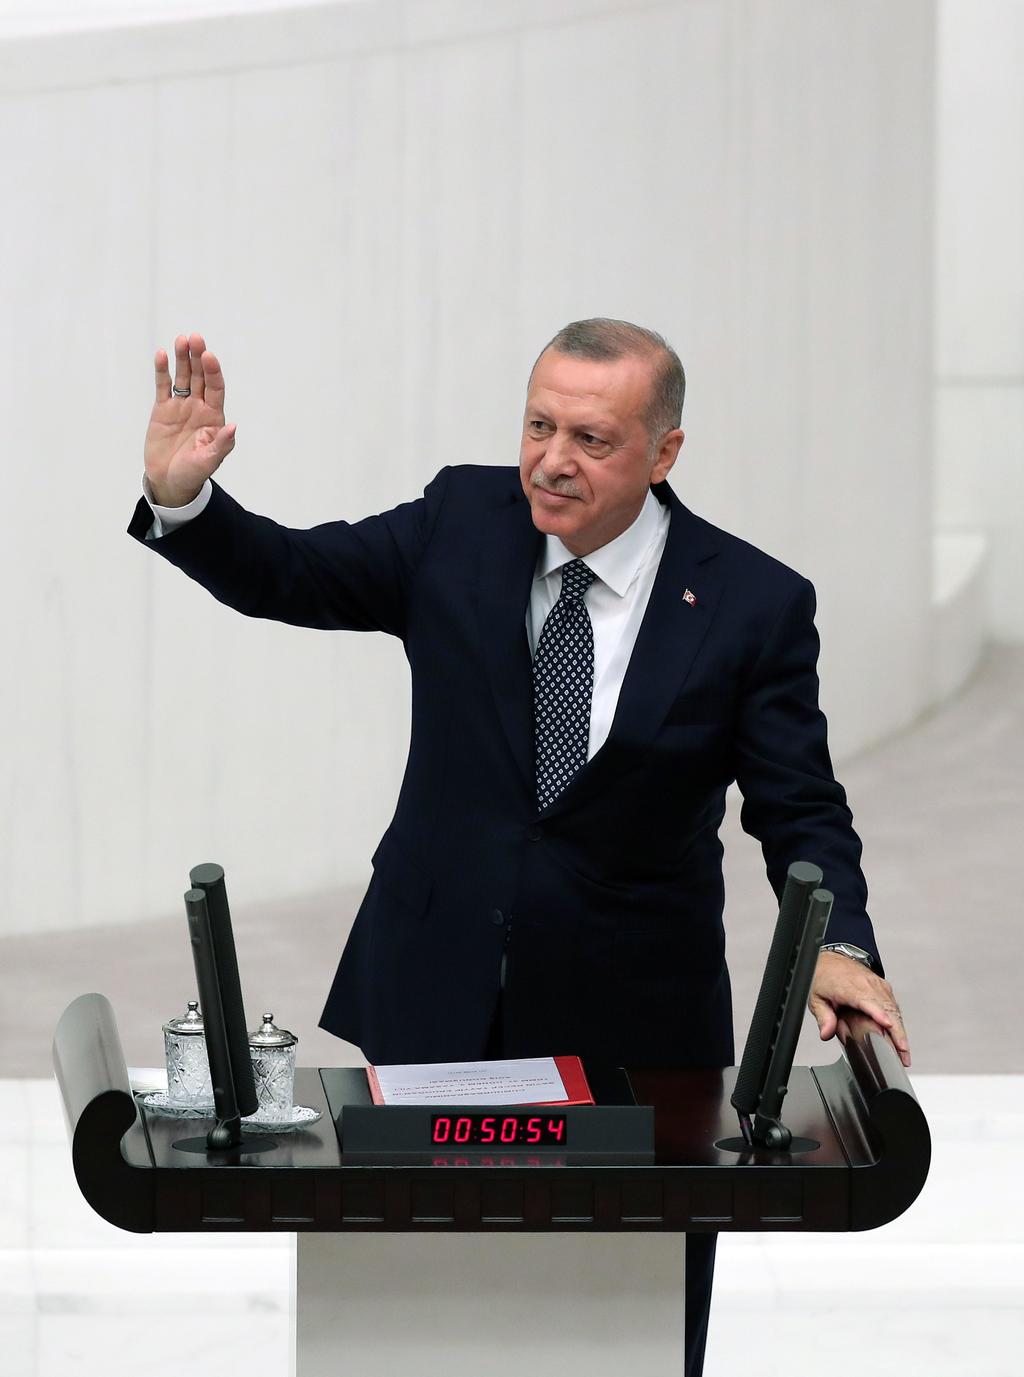 El presidente turco, Recep Tayyip Erdogan, anunció que quiere reasentar en Siria a dos millones de refugiados sirios. (ARCHIVO)